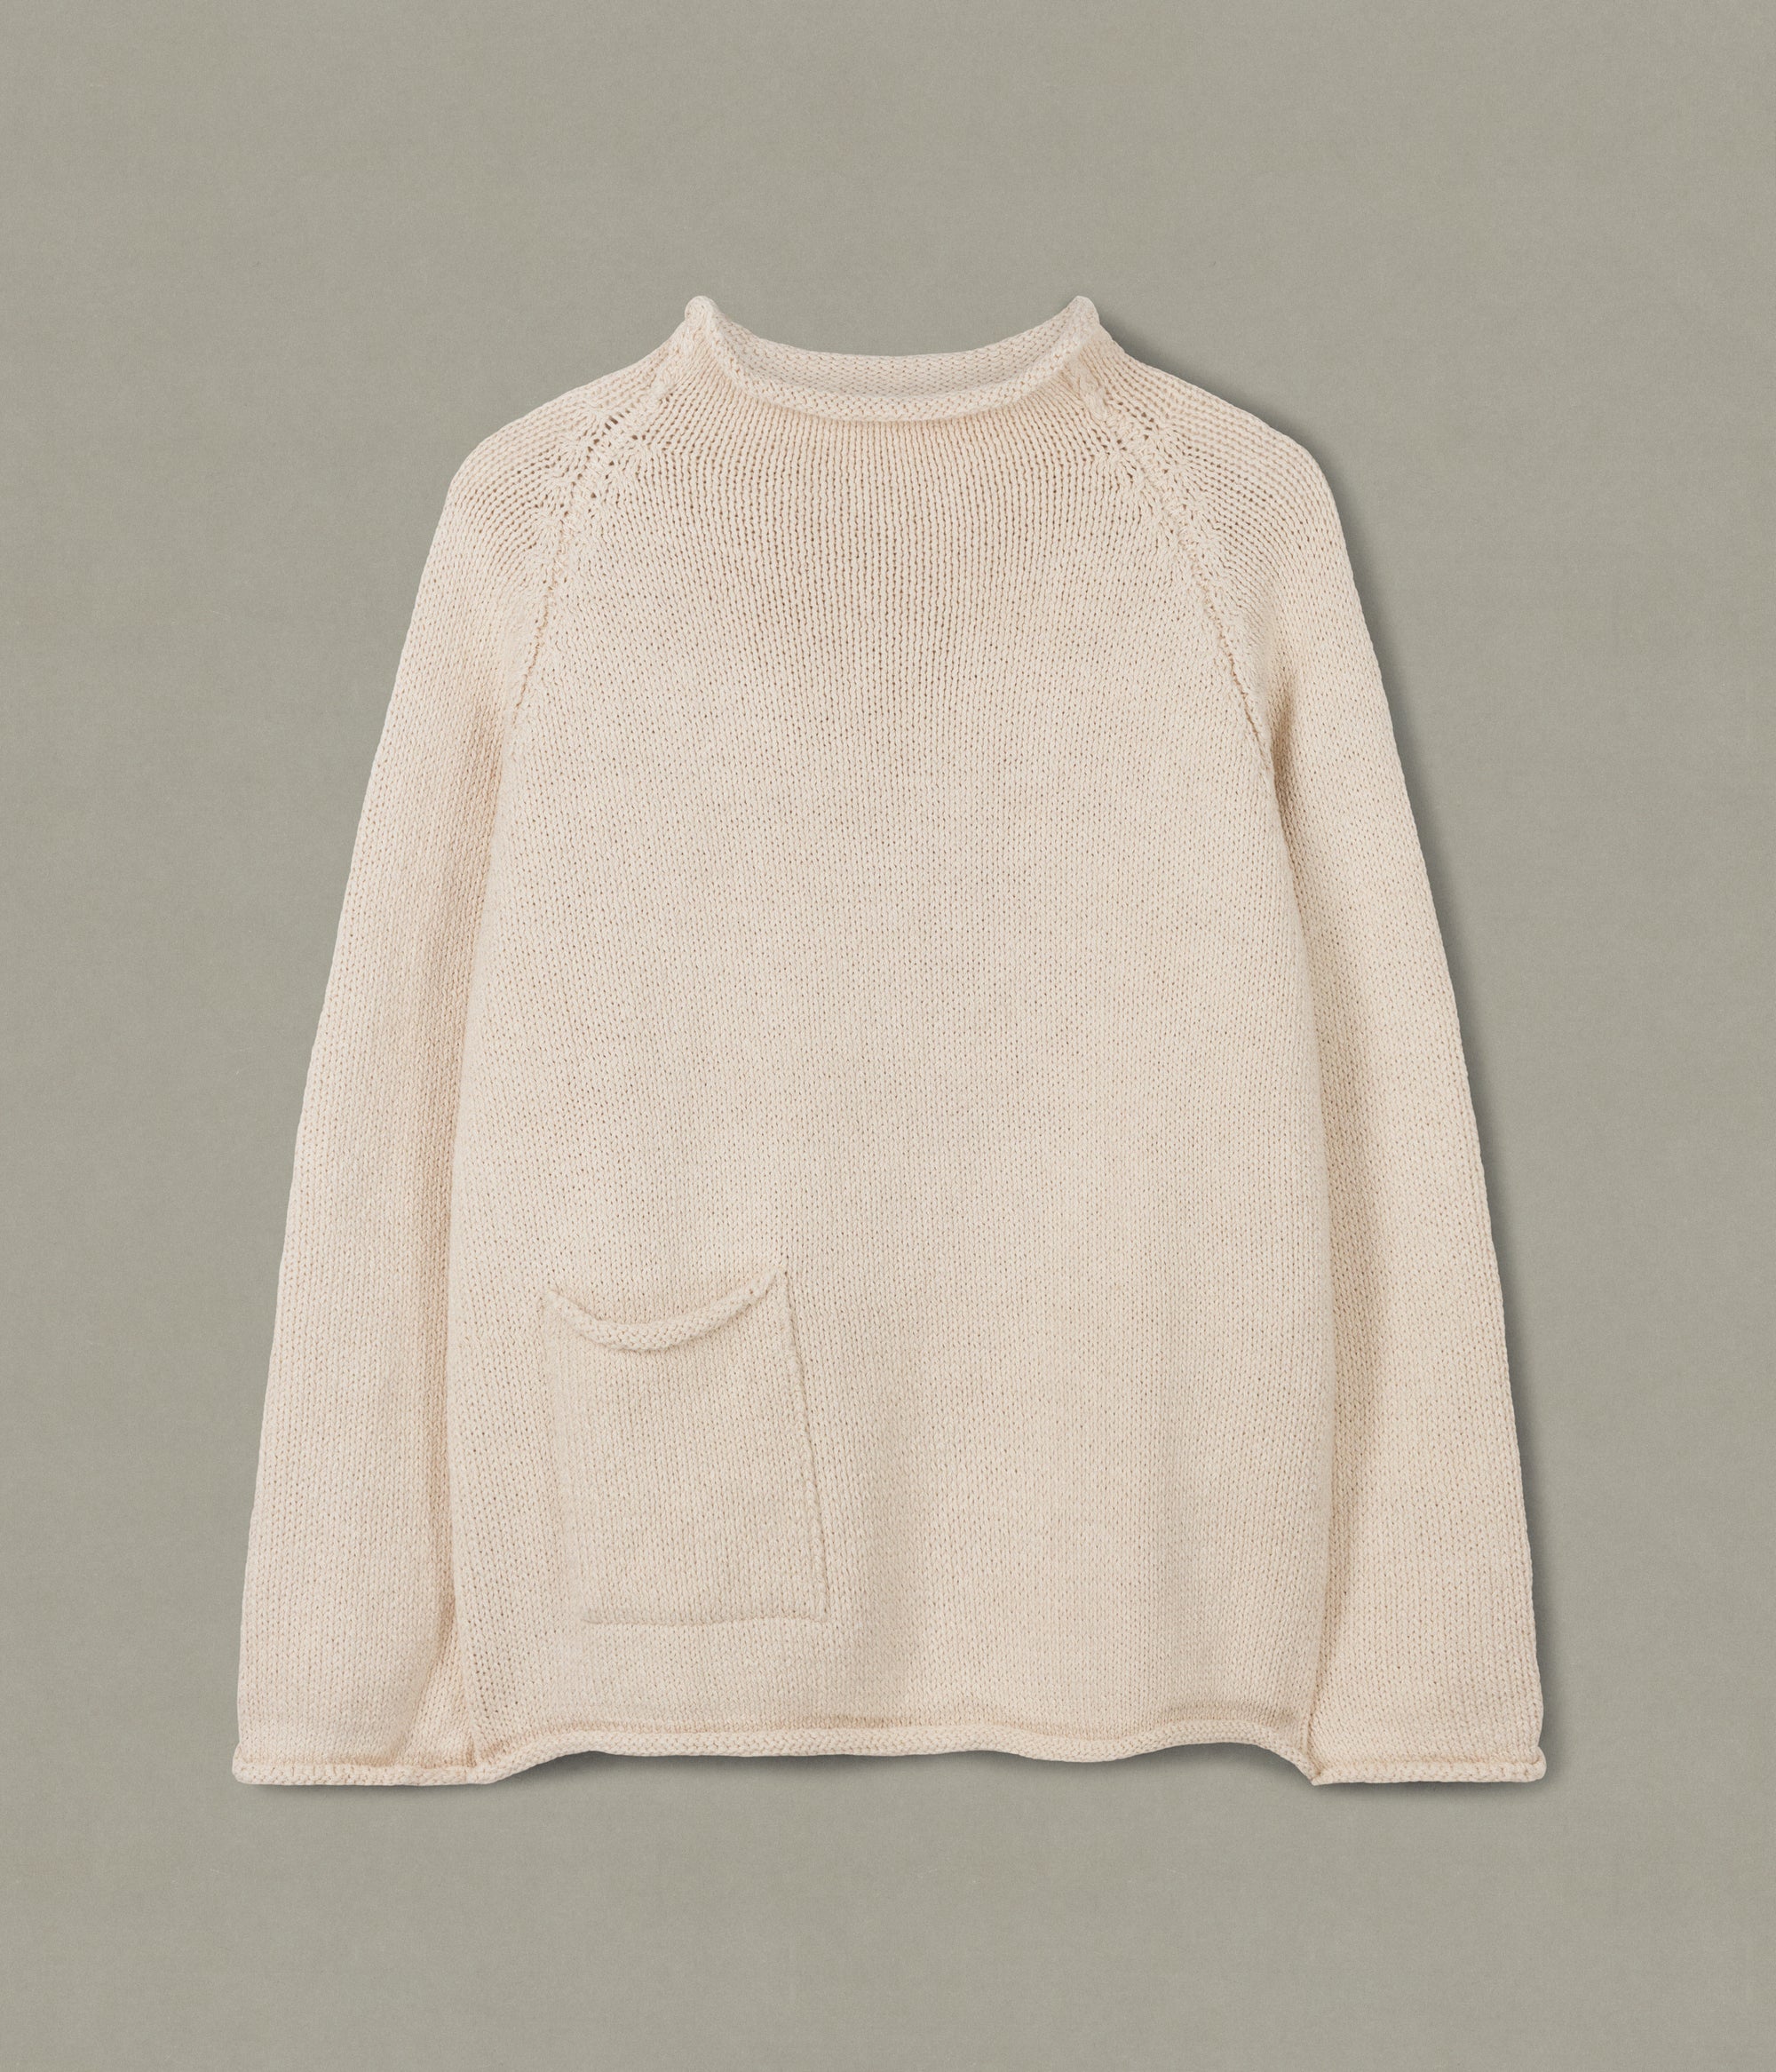 Cotton Fisherman Sweater, Undyed